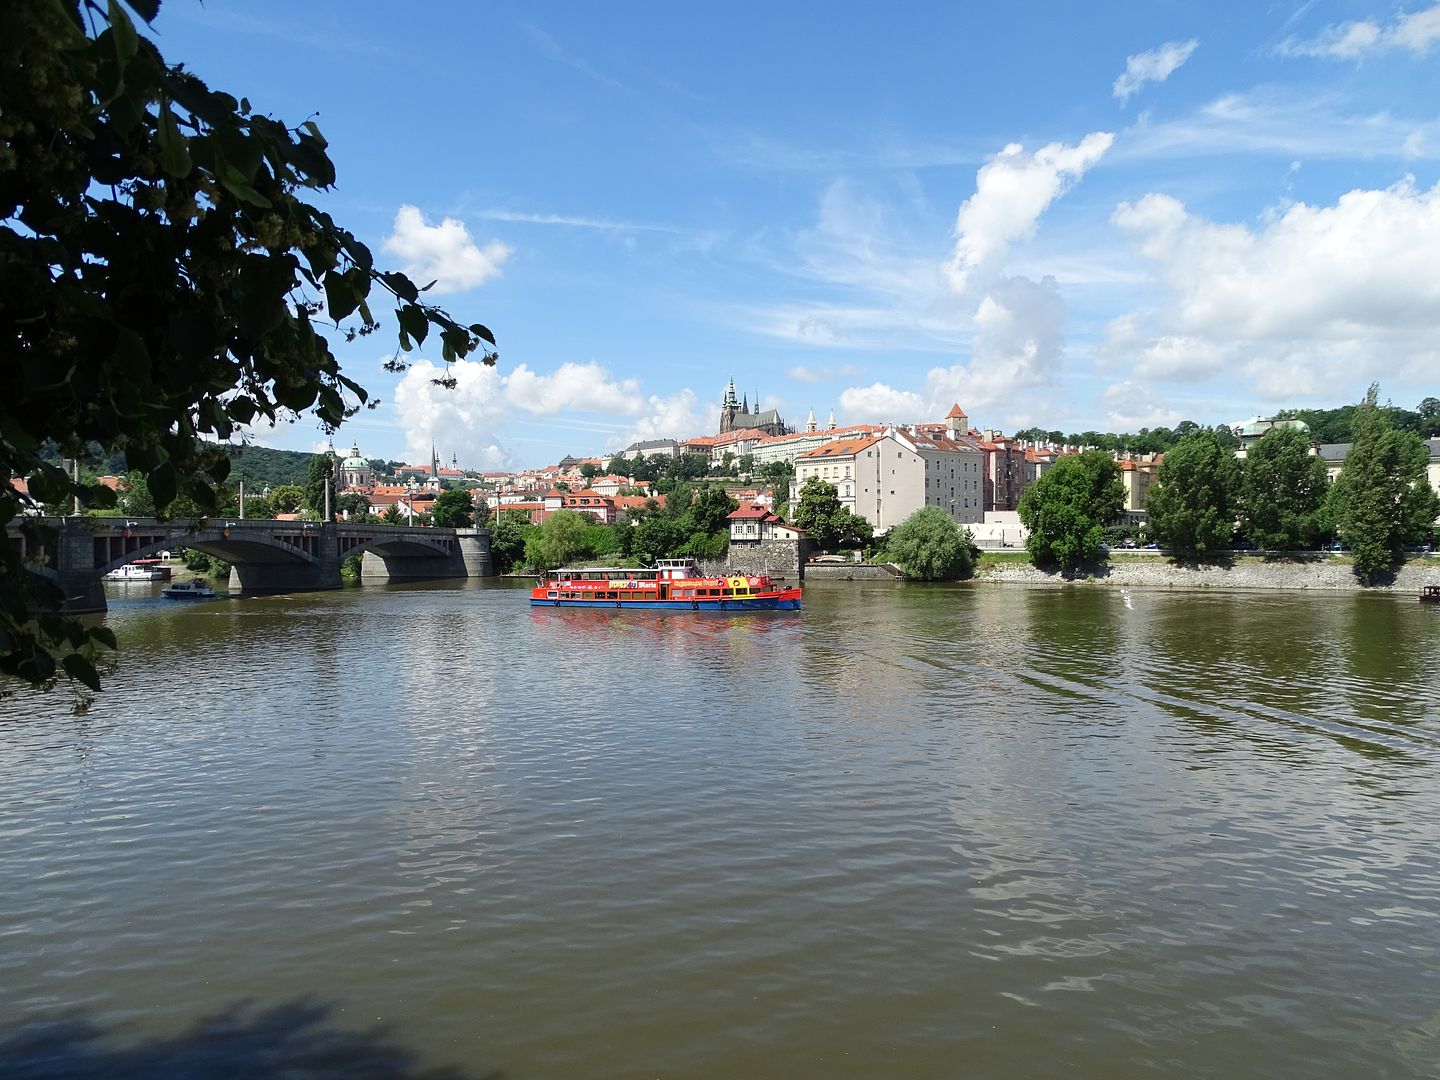 7 días en Praga con escursiones a Dresde (Alemania),Karlovy Vary y Terezin (E.C) - Blogs of Czech Republic - Día 3: Viernes 1 de Julio de 2016 (15)